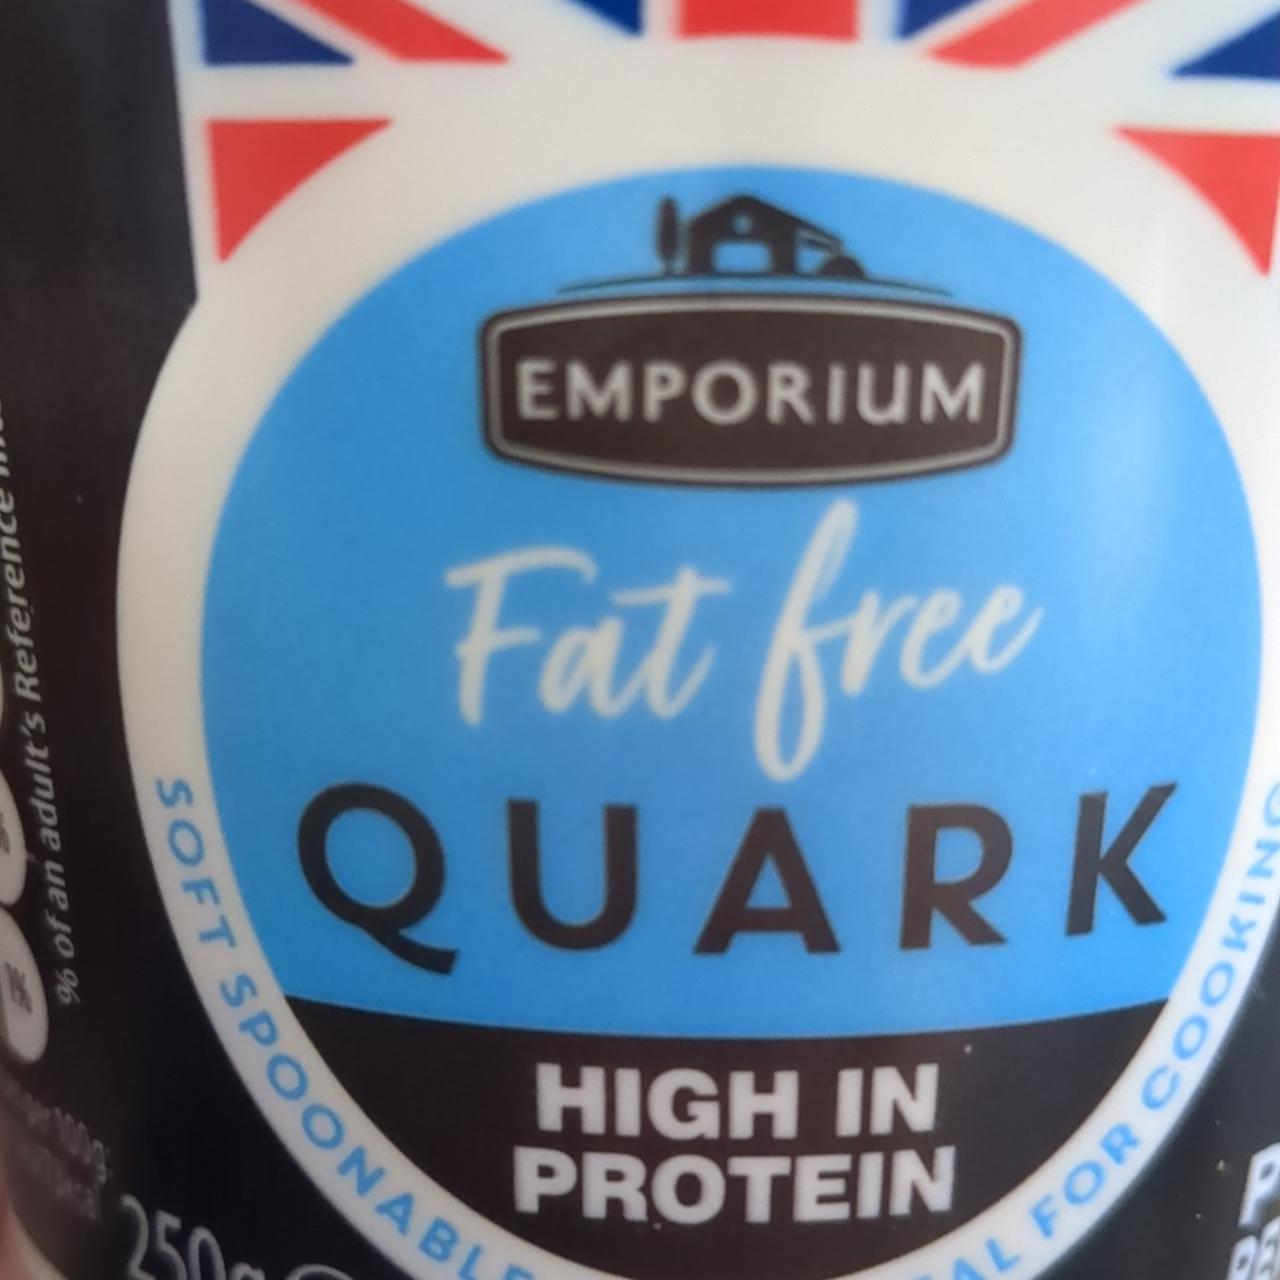 Fotografie - Fat free quark high in protein Emporium